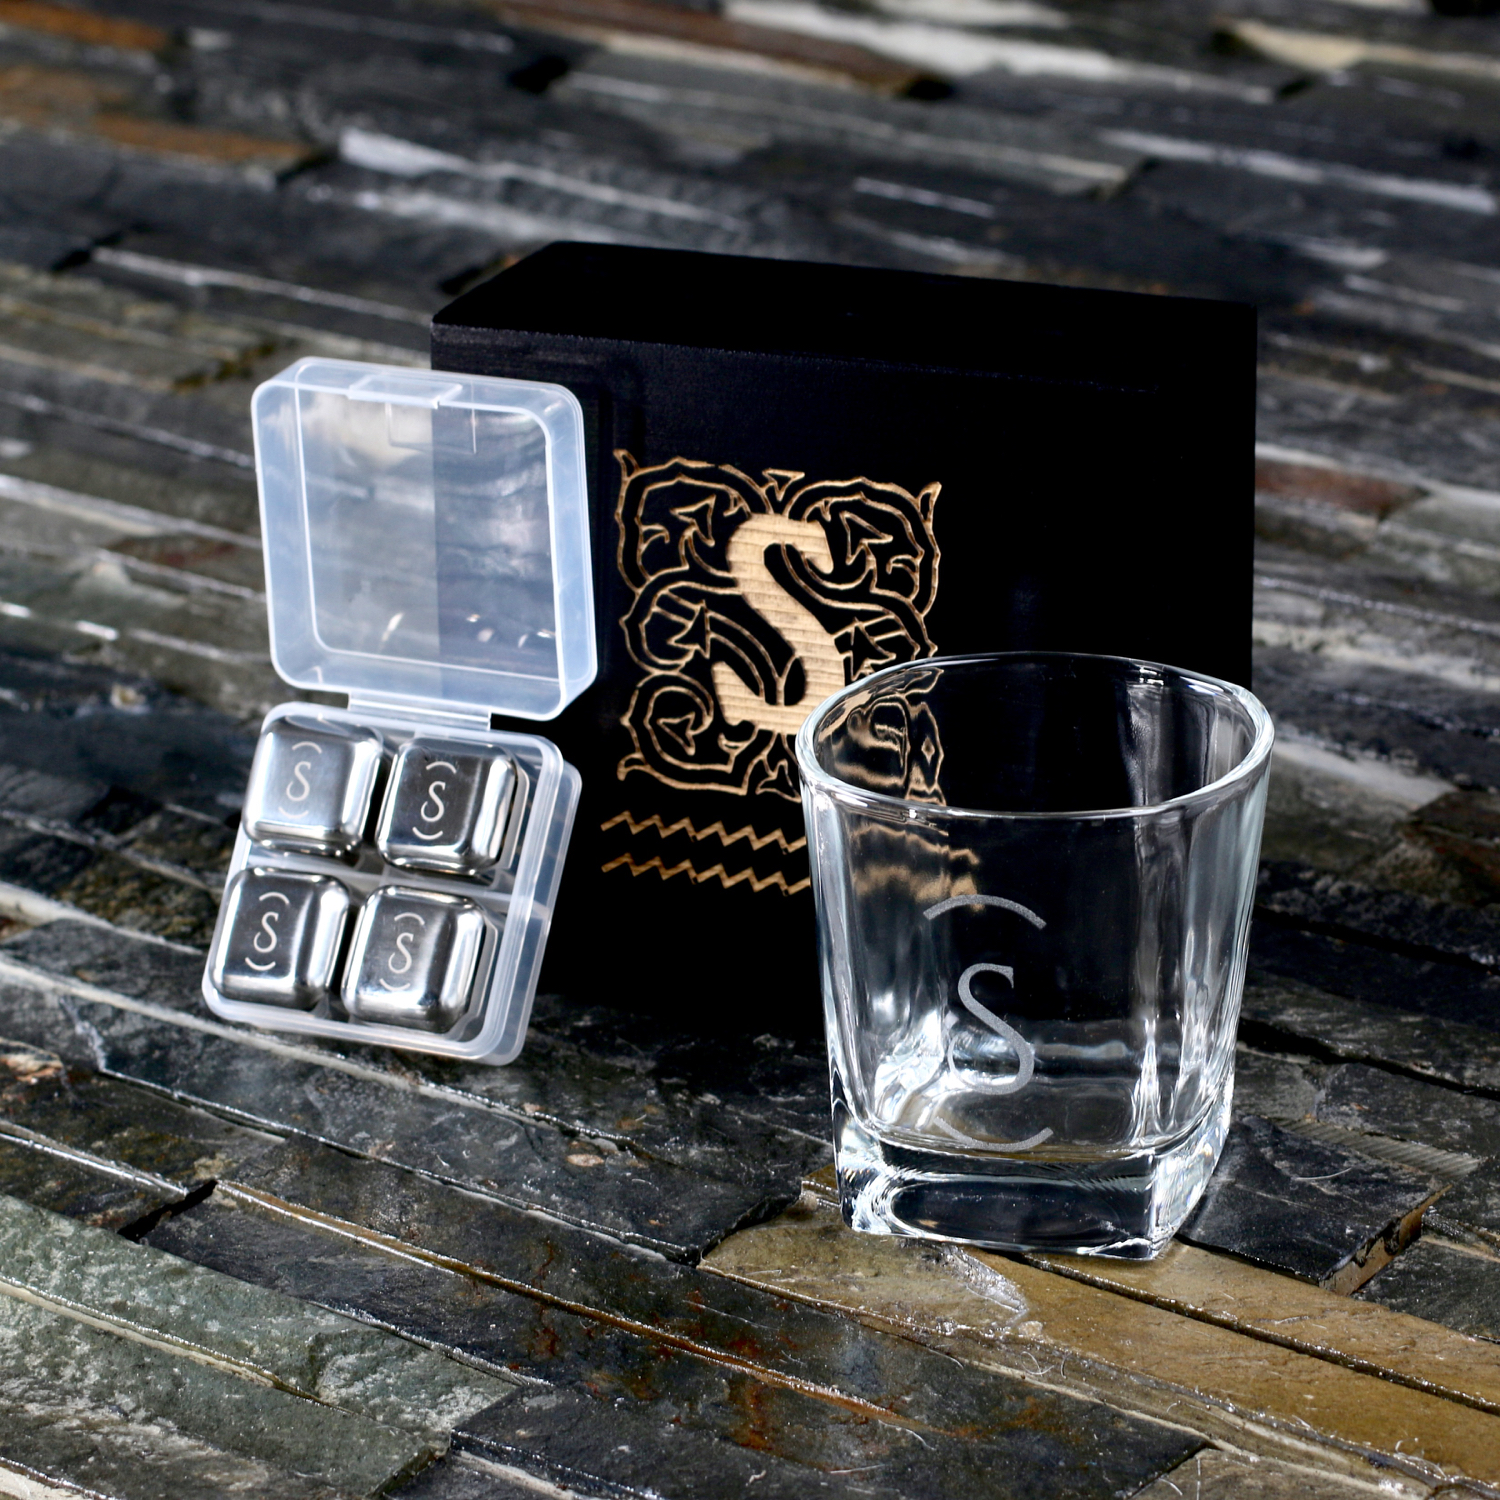 Whiskey Stones Set Gift Box, Whiskey Glass Set Gift Box